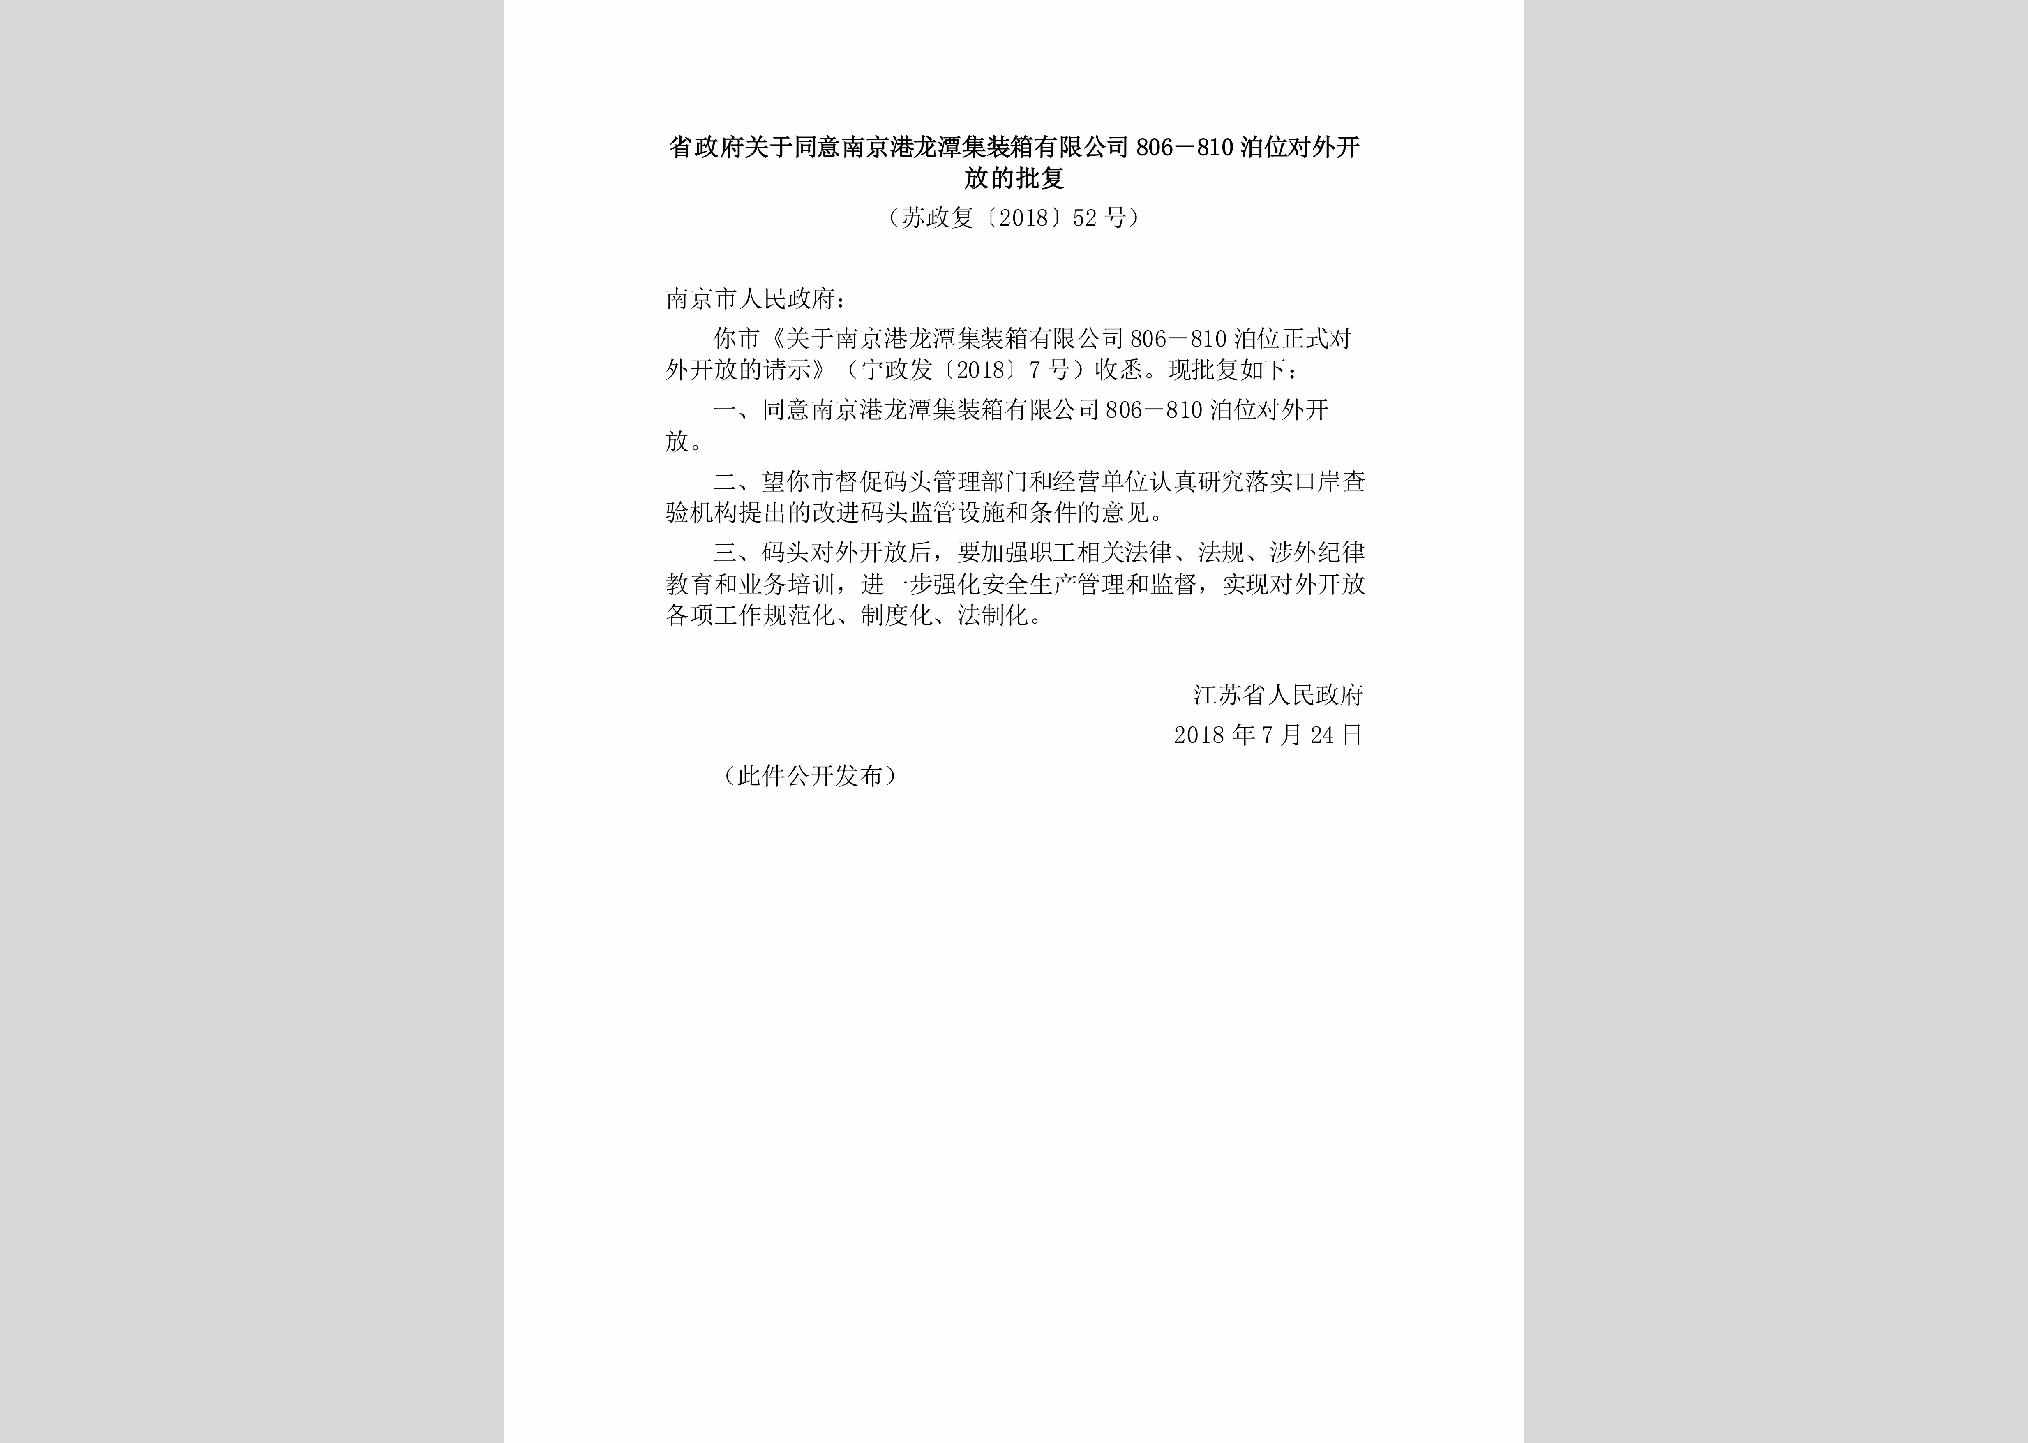 苏政复[2018]52号：省政府关于同意南京港龙潭集装箱有限公司806－810泊位对外开放的批复